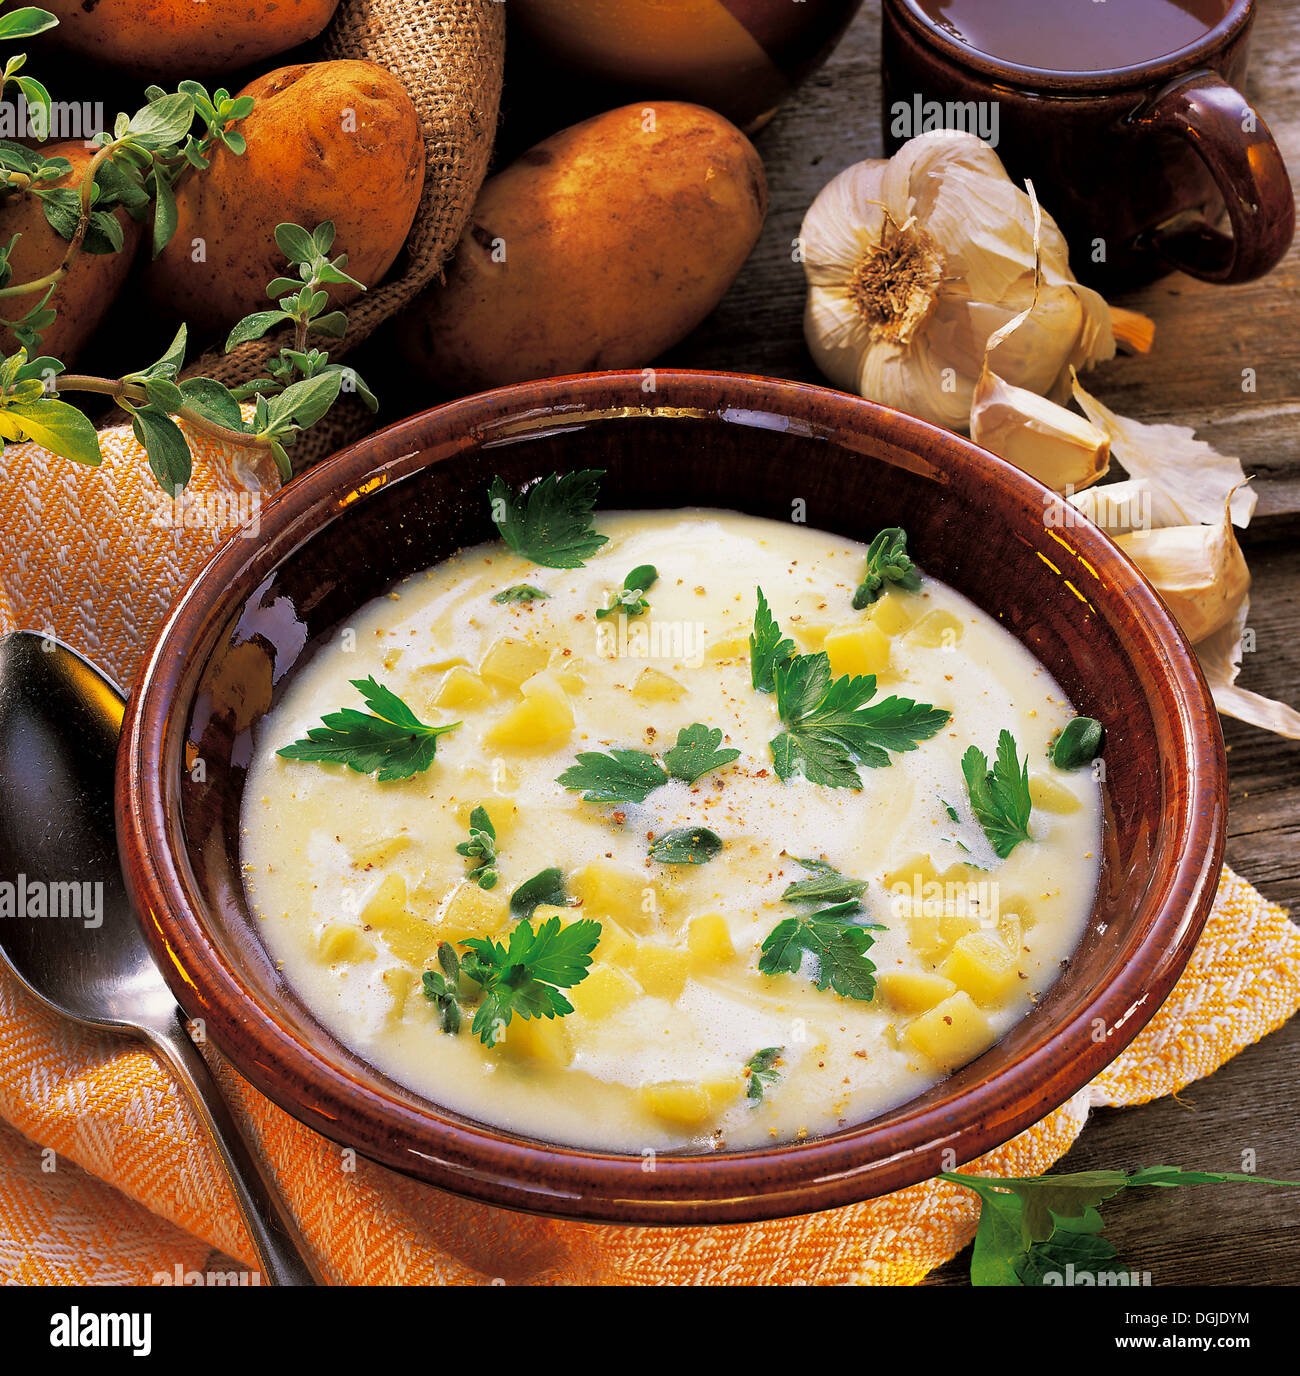 Light potato soup, Germany. Stock Photo